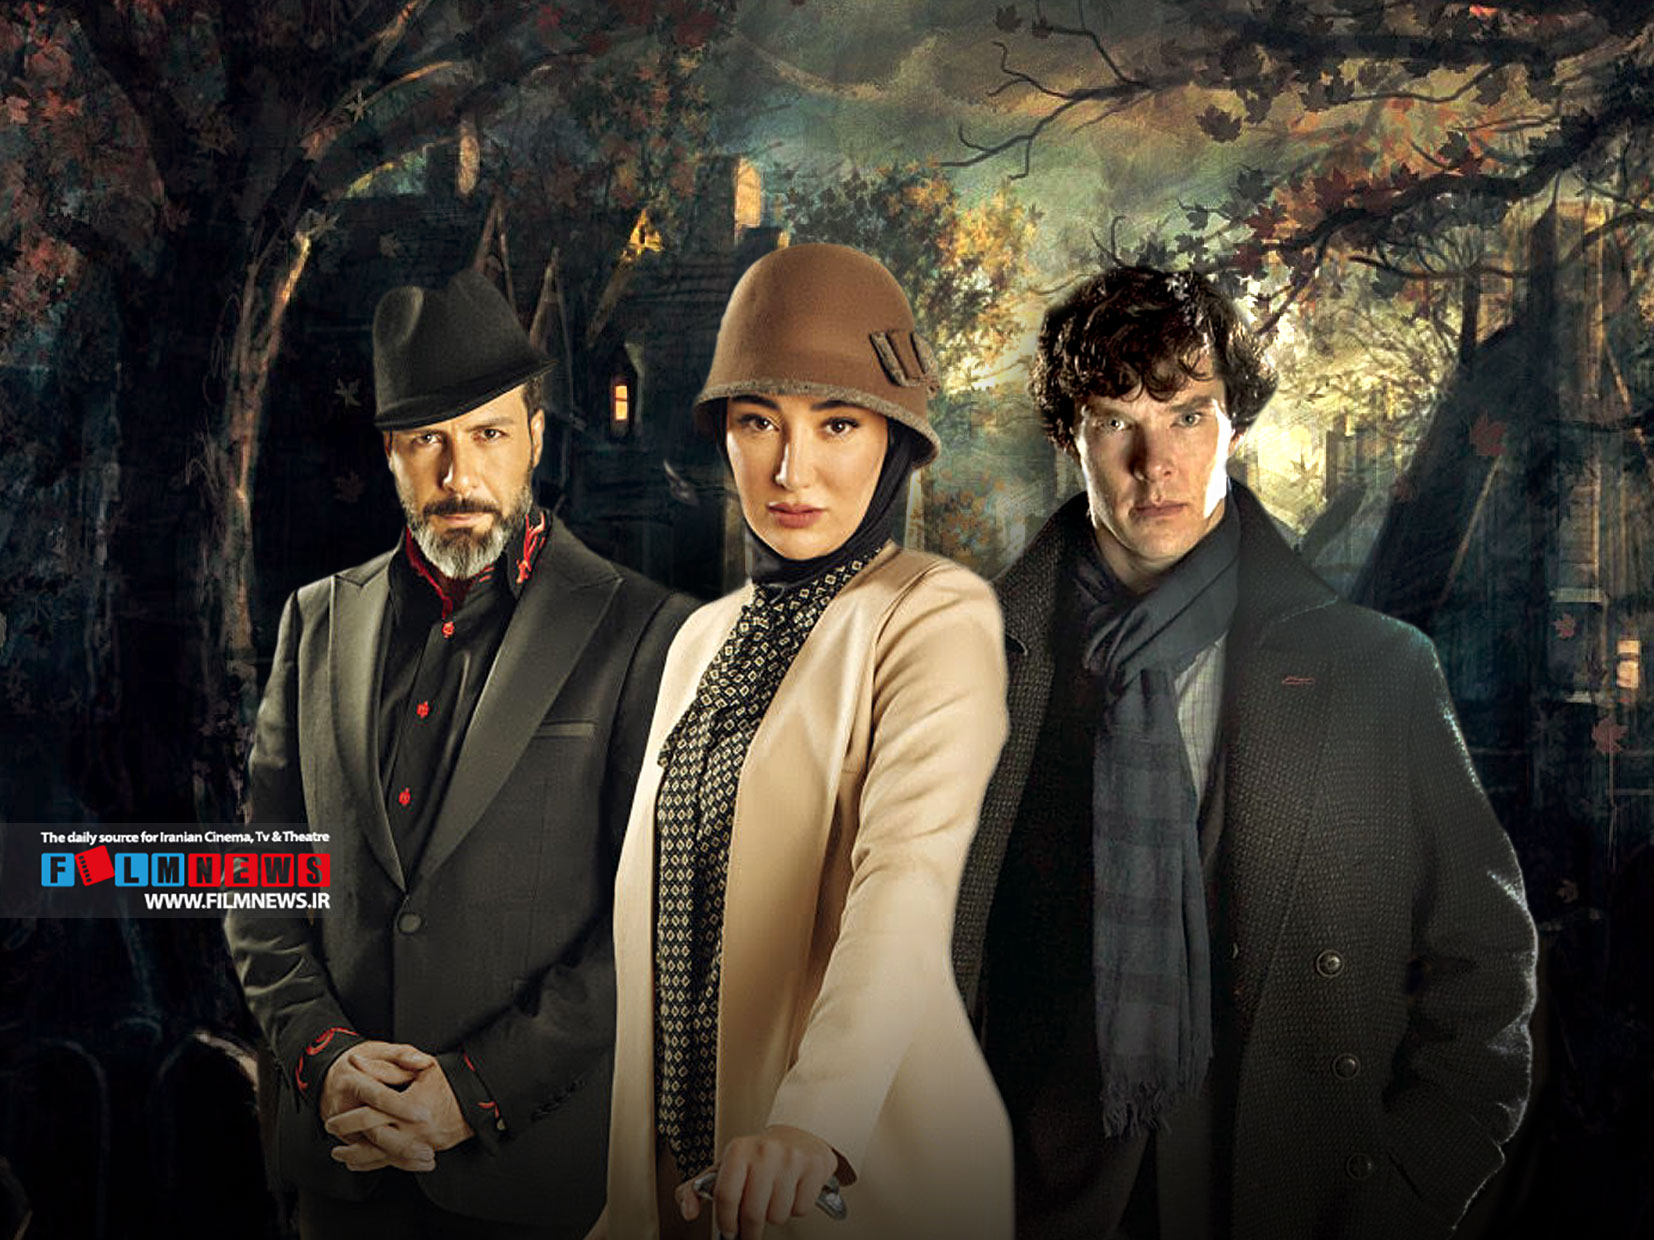 قابلیت های نقش مستقل فصل سوم «پدر رضاعی» مشخص شد انتخاب شرلوک هلمز است. شما می توانید یک شهروند، عضو مافیا یا مستقل باشید.